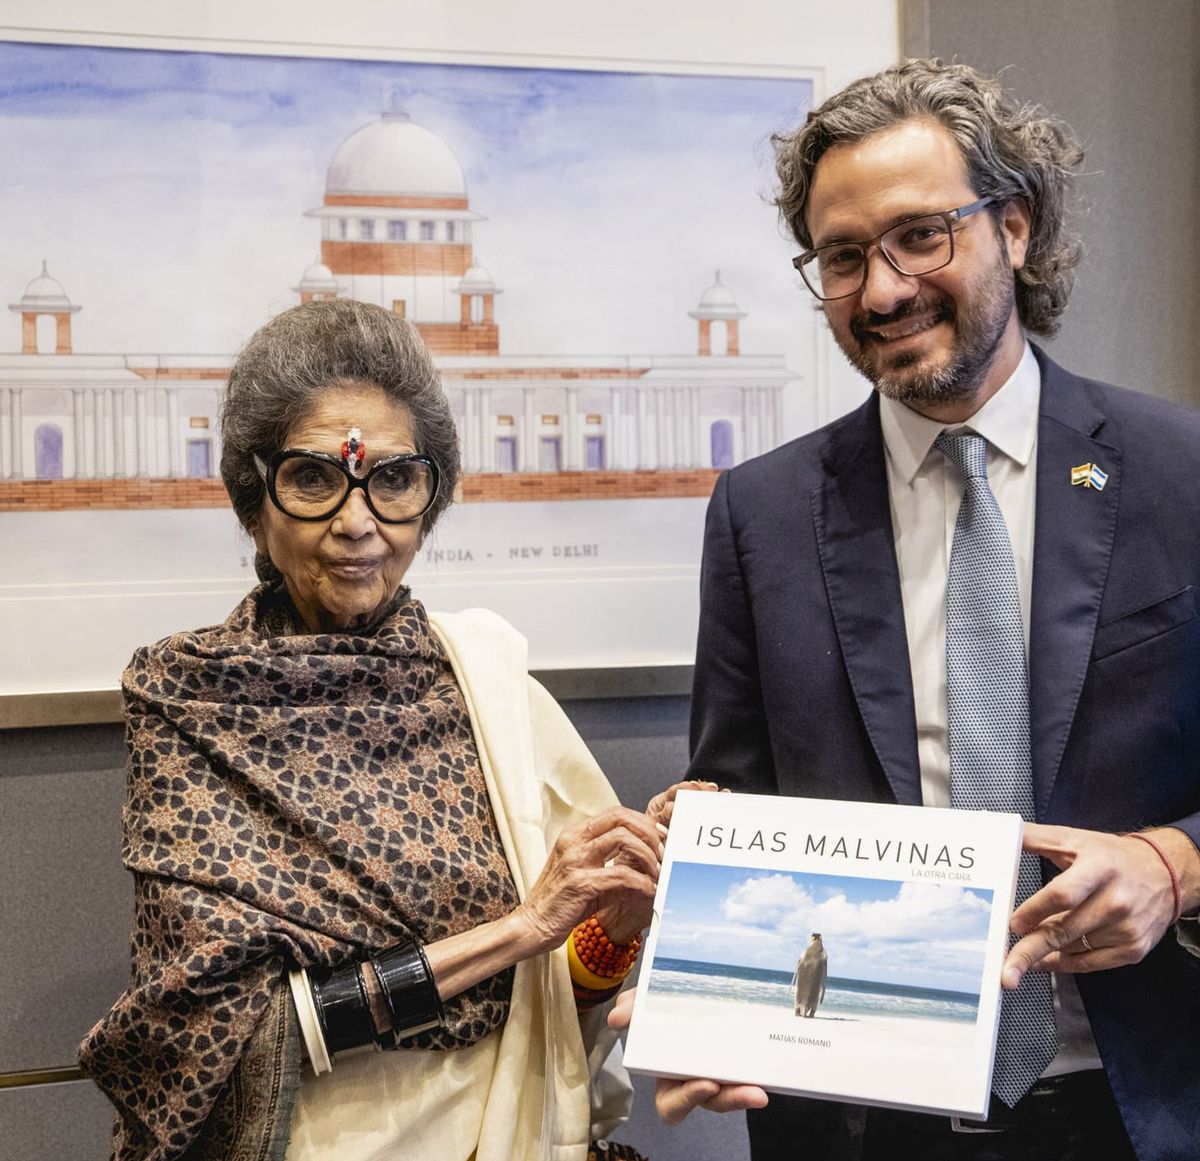 Cafiero lanzó en India una Comisión para el Diálogo por Malvinas